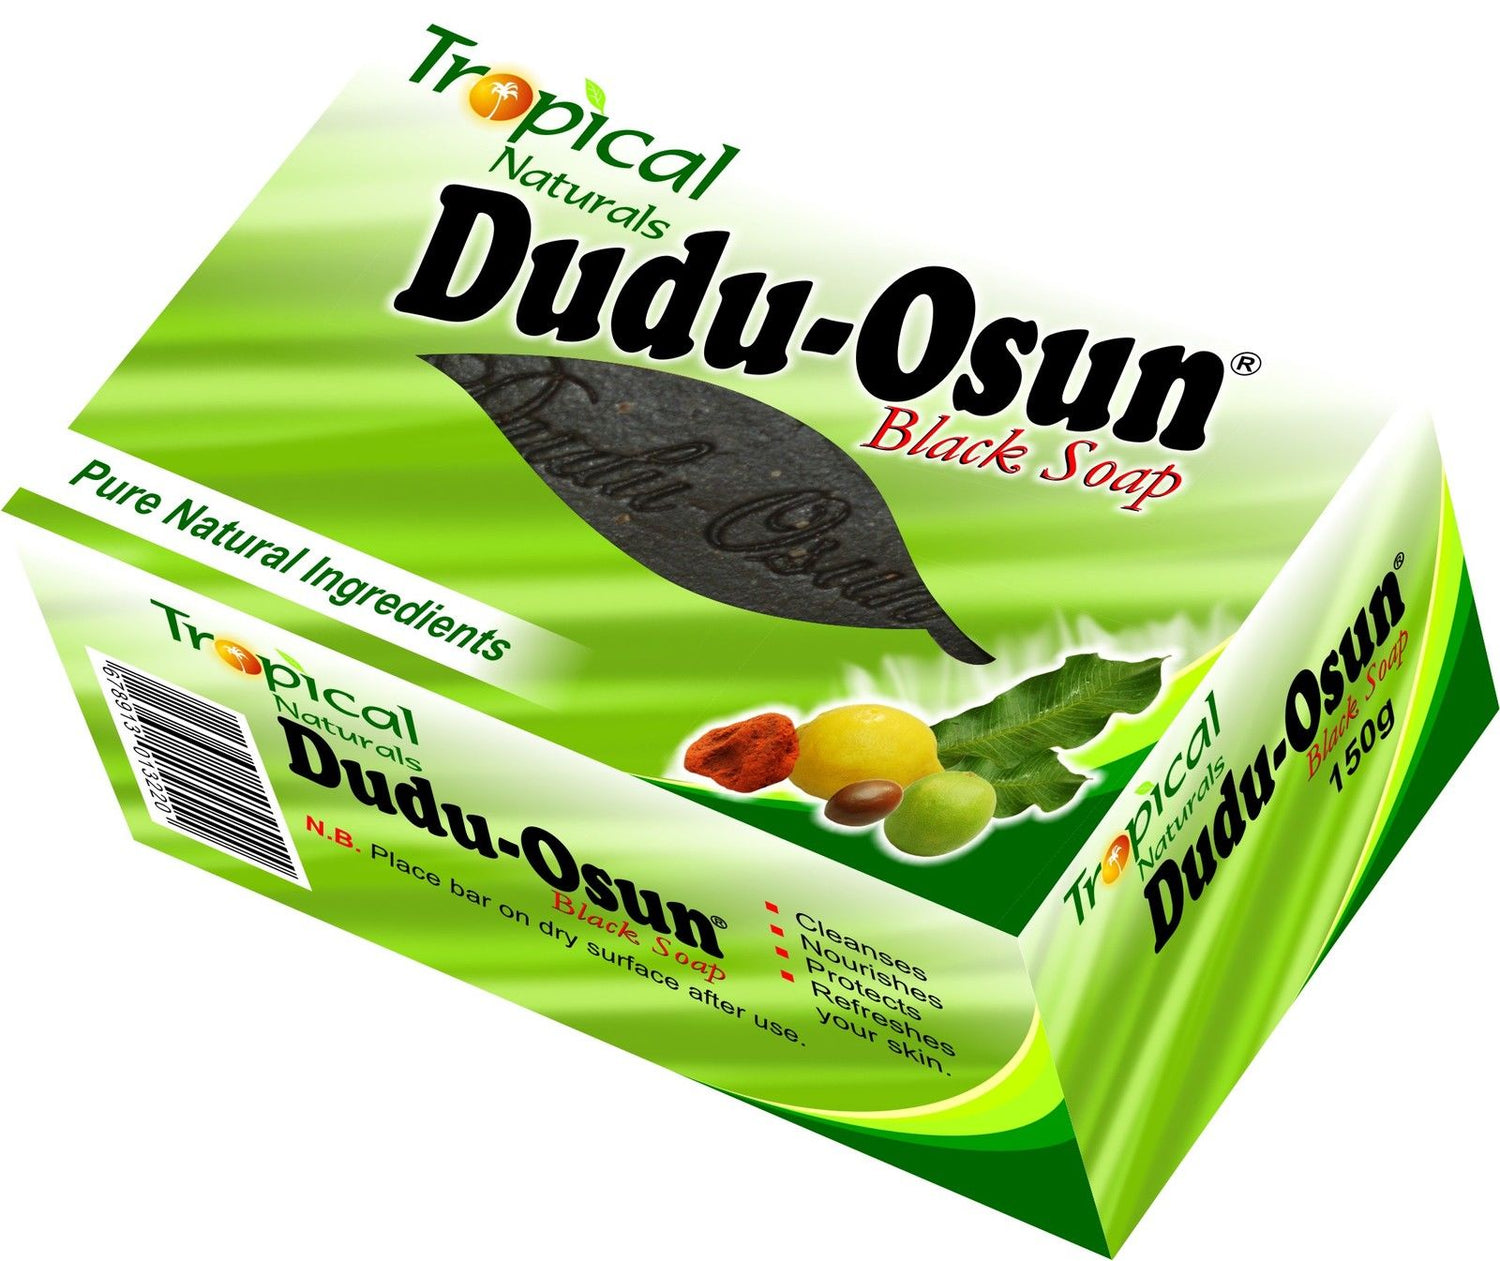 Tropical Naturals Dudu Osun Black Soap 150gm For Psoriasis,Eczema,Acne,Fungus